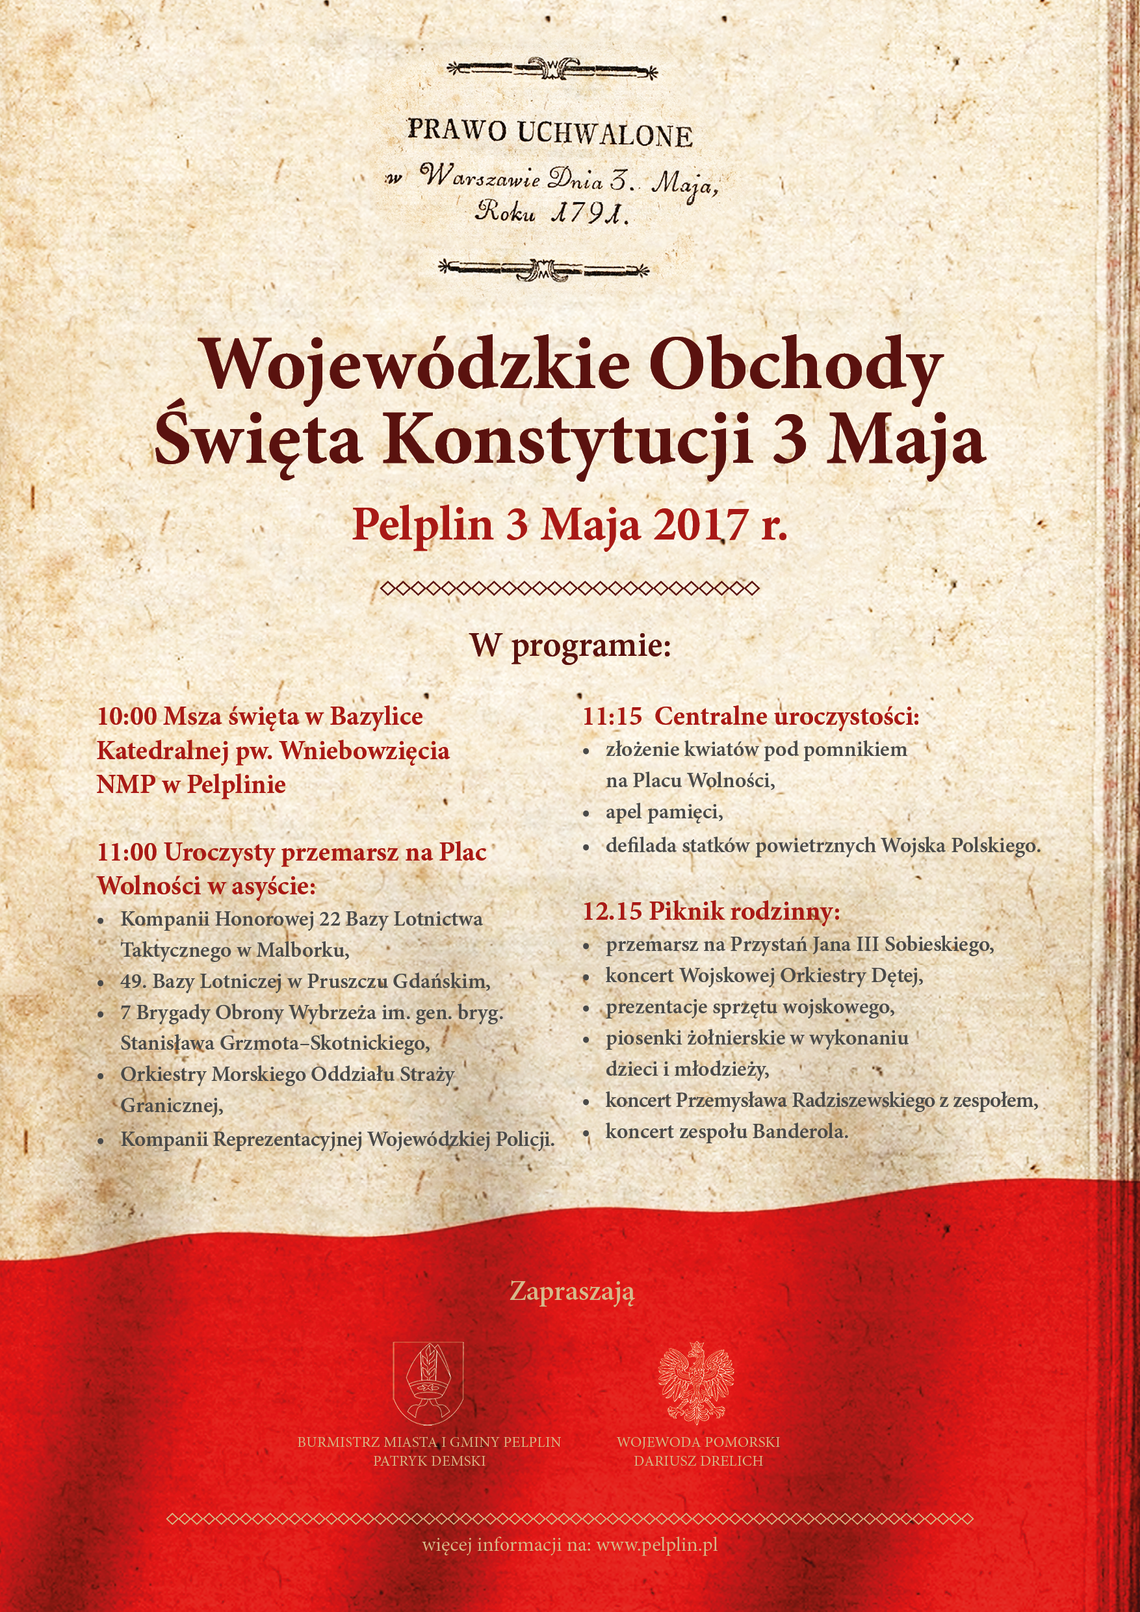 Wojewódzkie Obchody Święta Konstytucji 3 Maja w Pelplinie